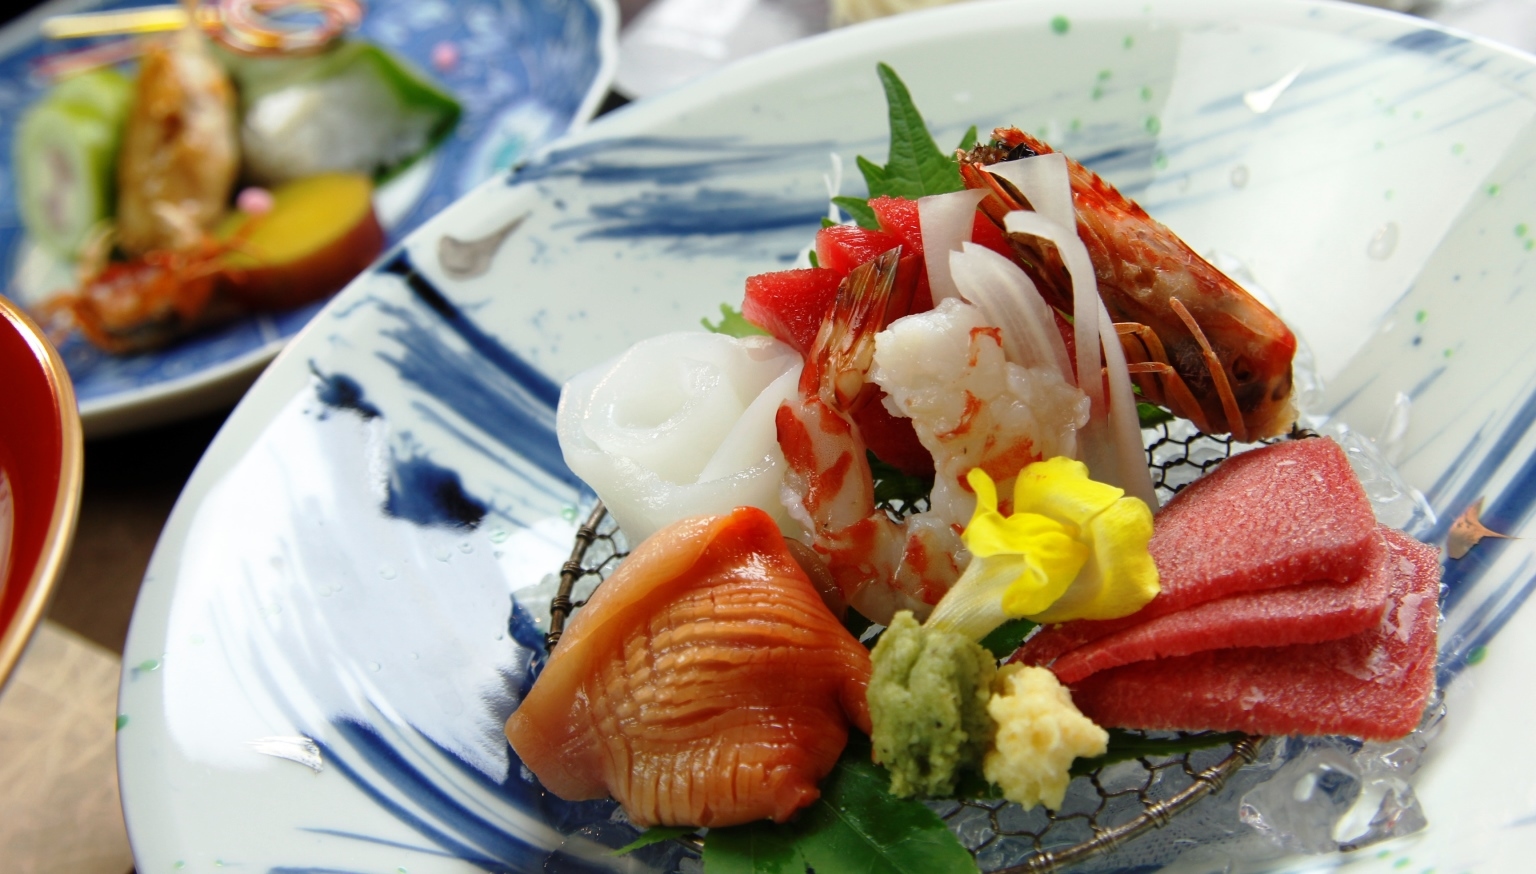 【花コース】グレードアップの懐石料理で贅沢なひとときを。JALクーポン可能